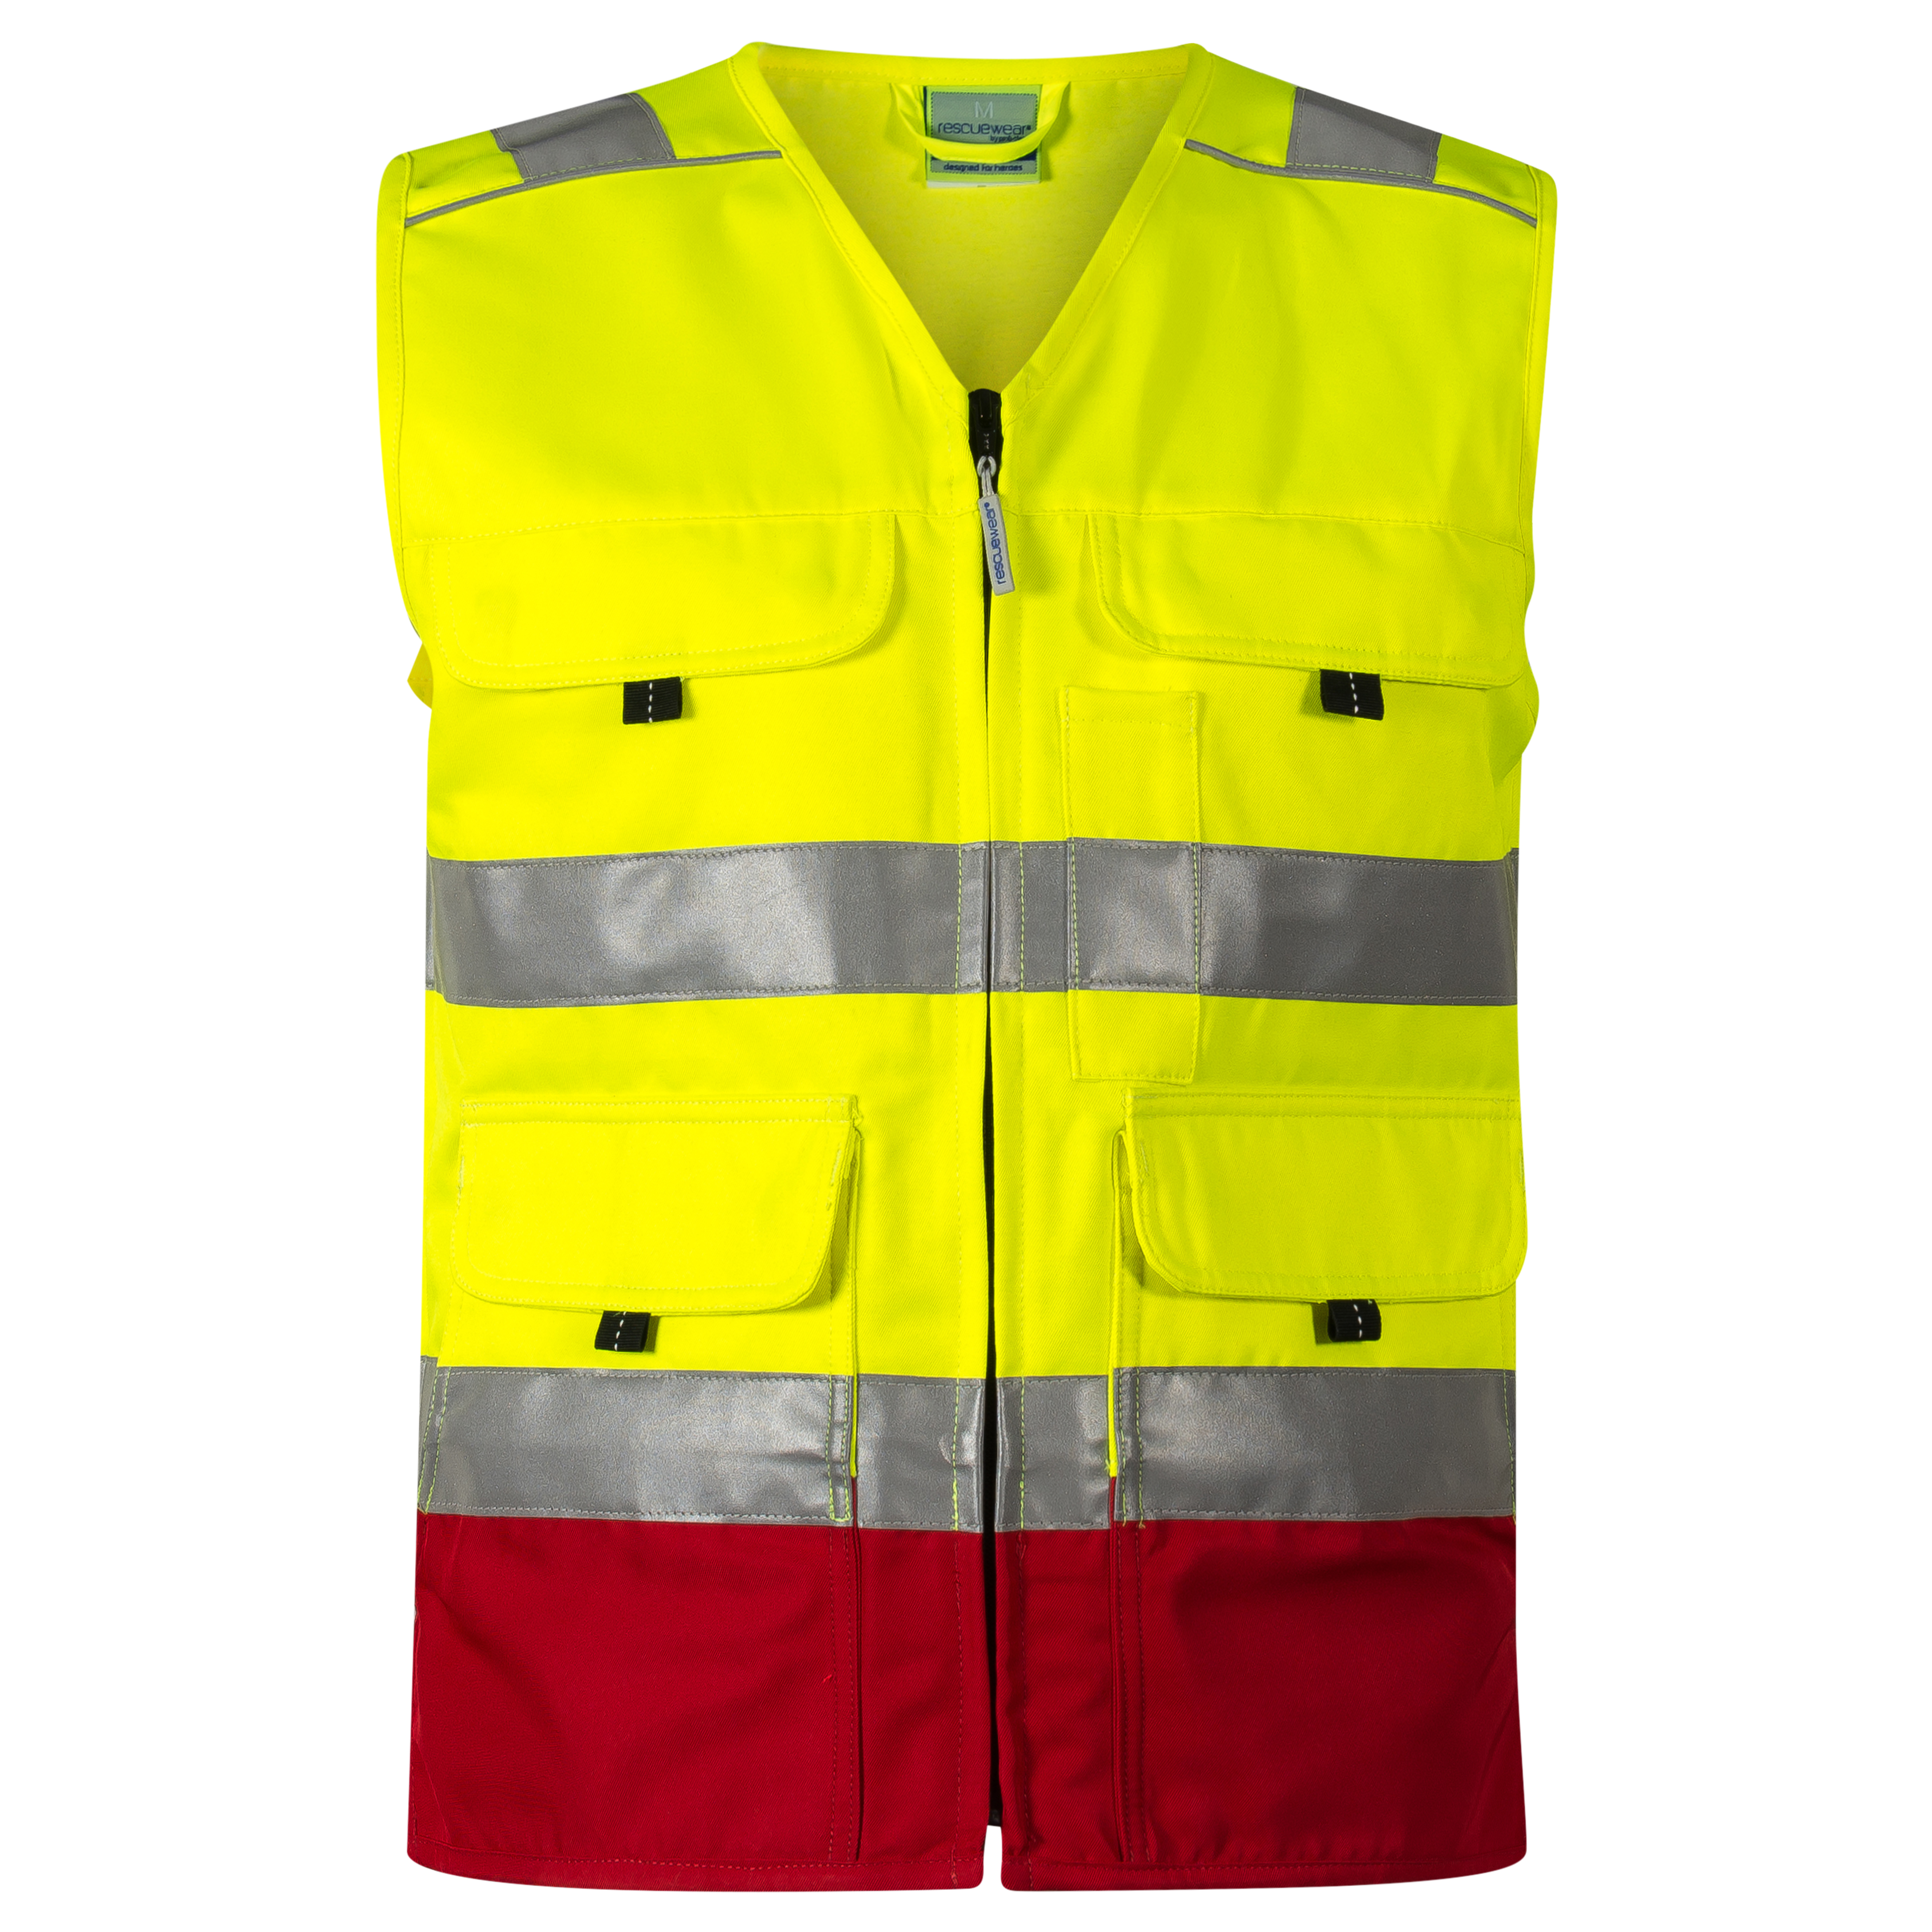 Rescuewear Sommerweste 33652 HiVis Klasse 1 Rot / Neon Gelb